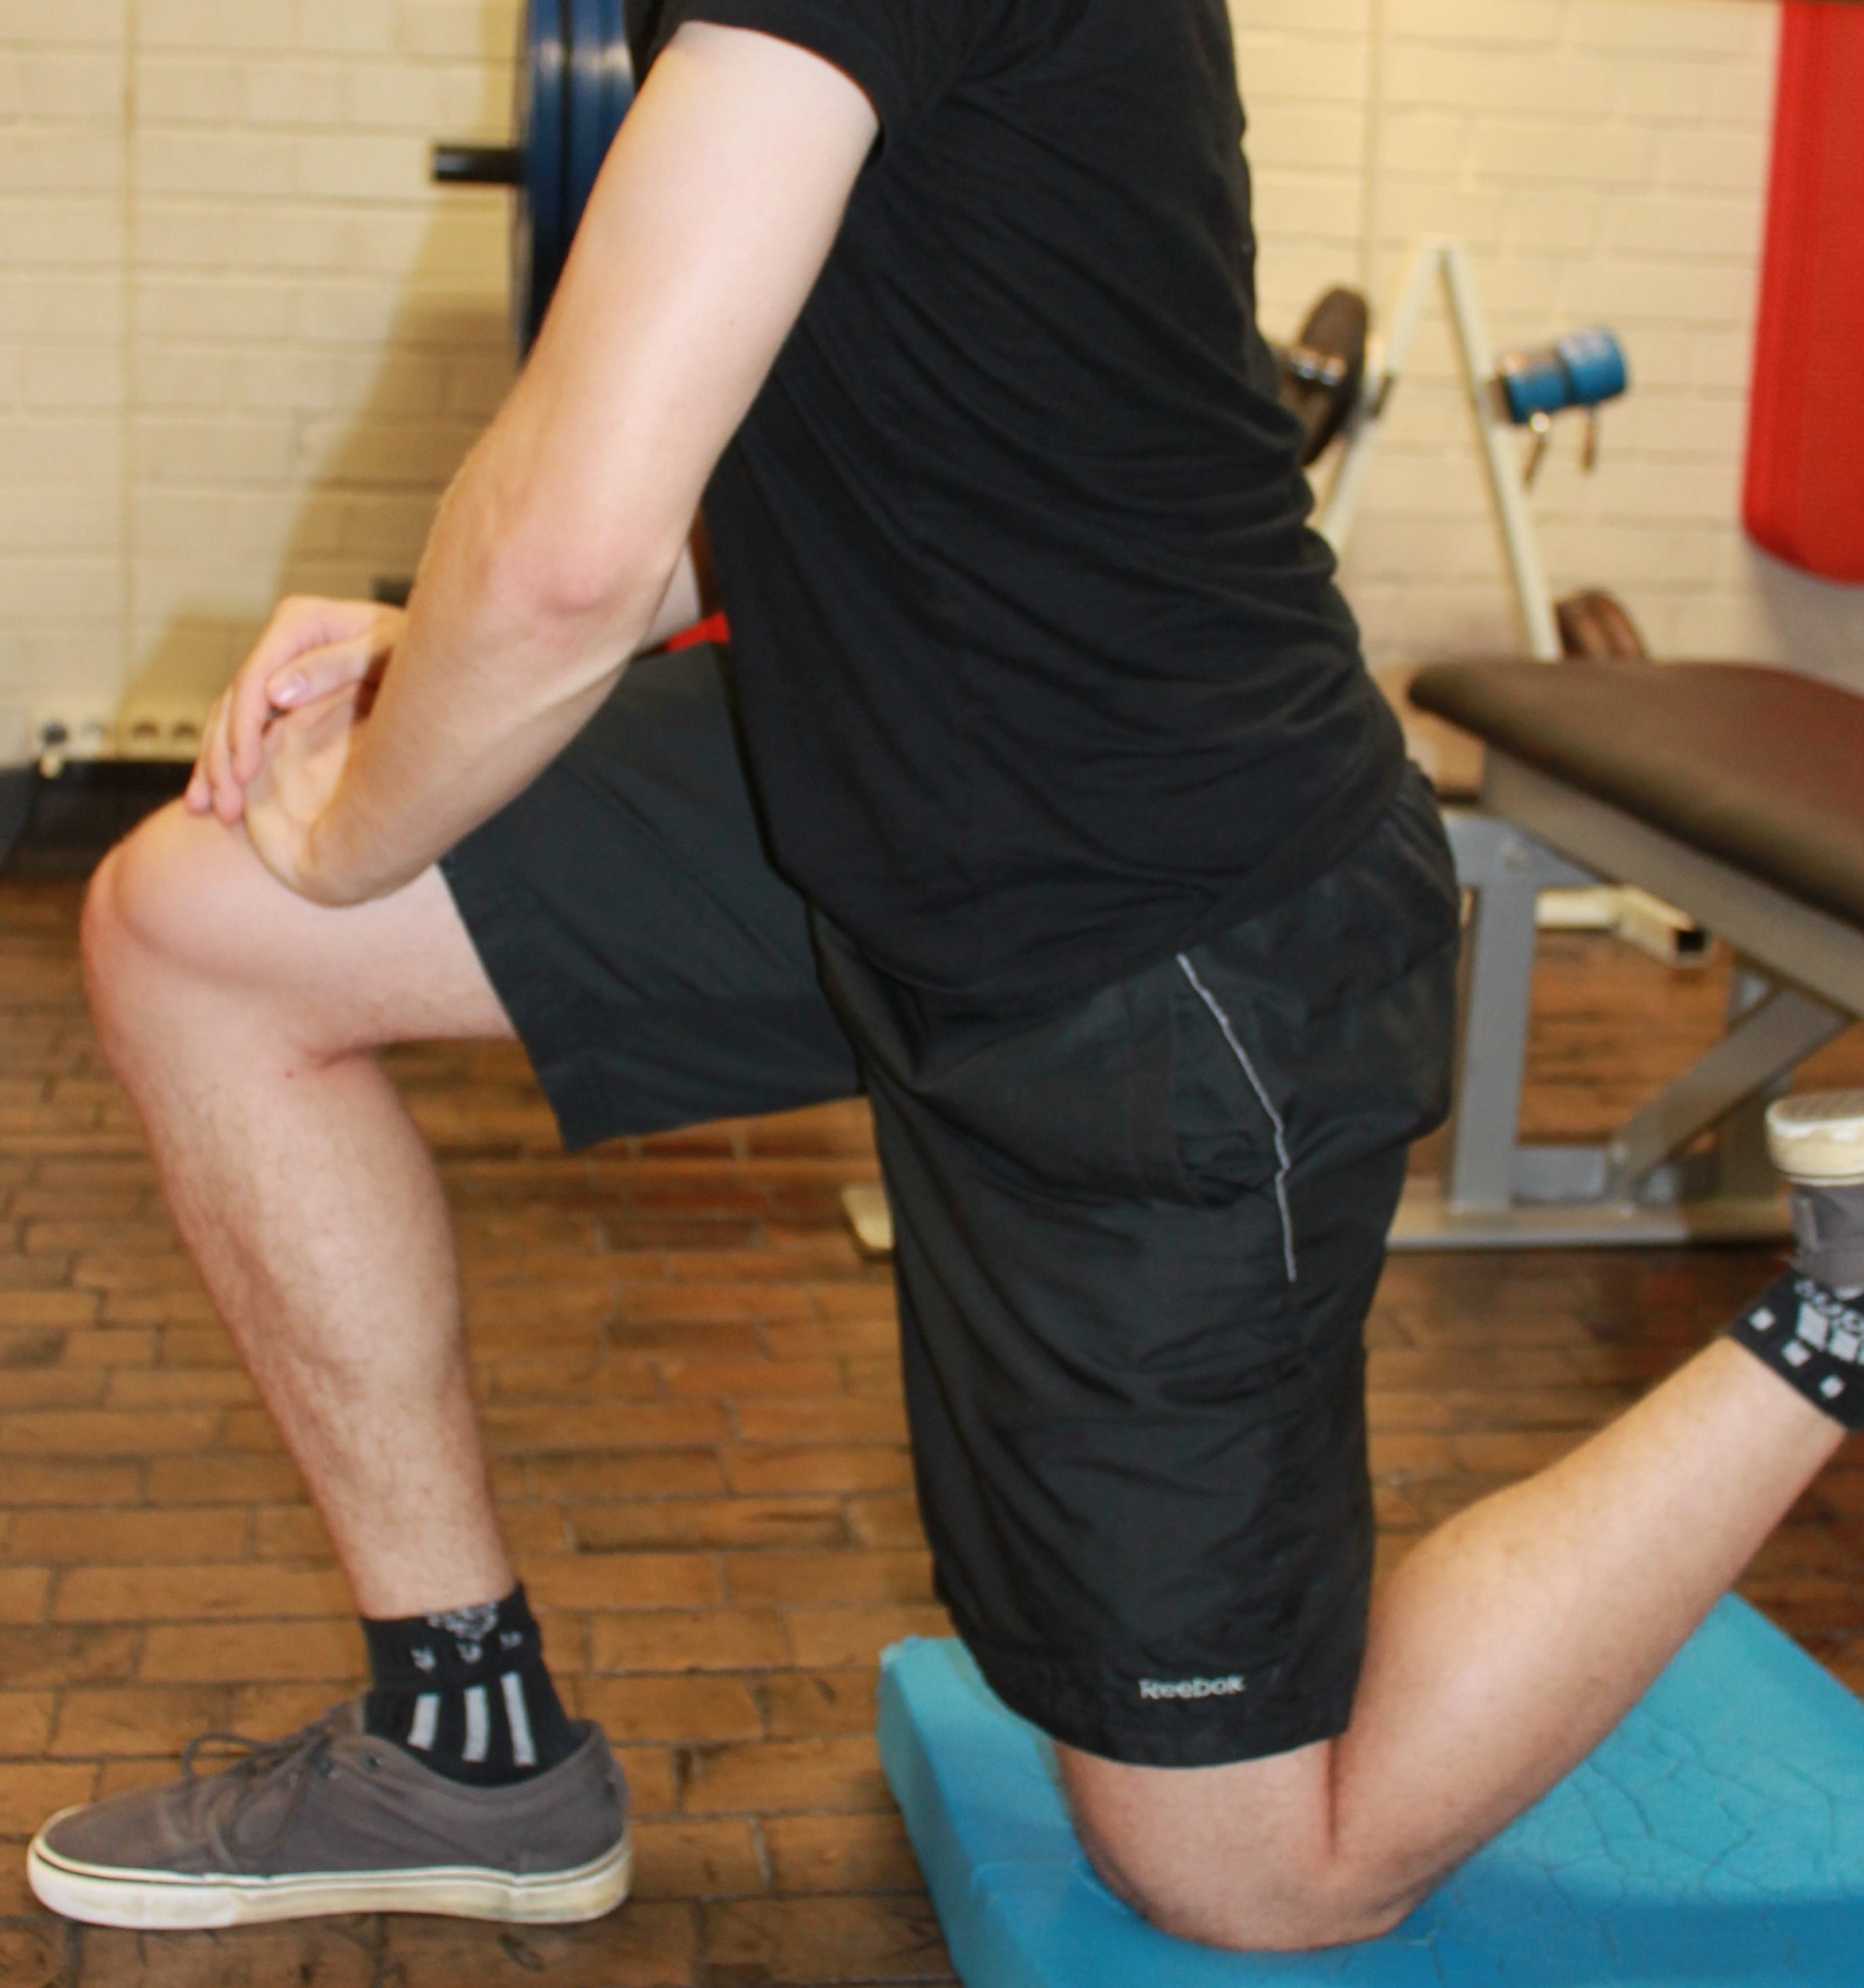 word image 49 - Butt-Wink beheben: So hälst du deinen Rücken gerade bei Kniebeugen